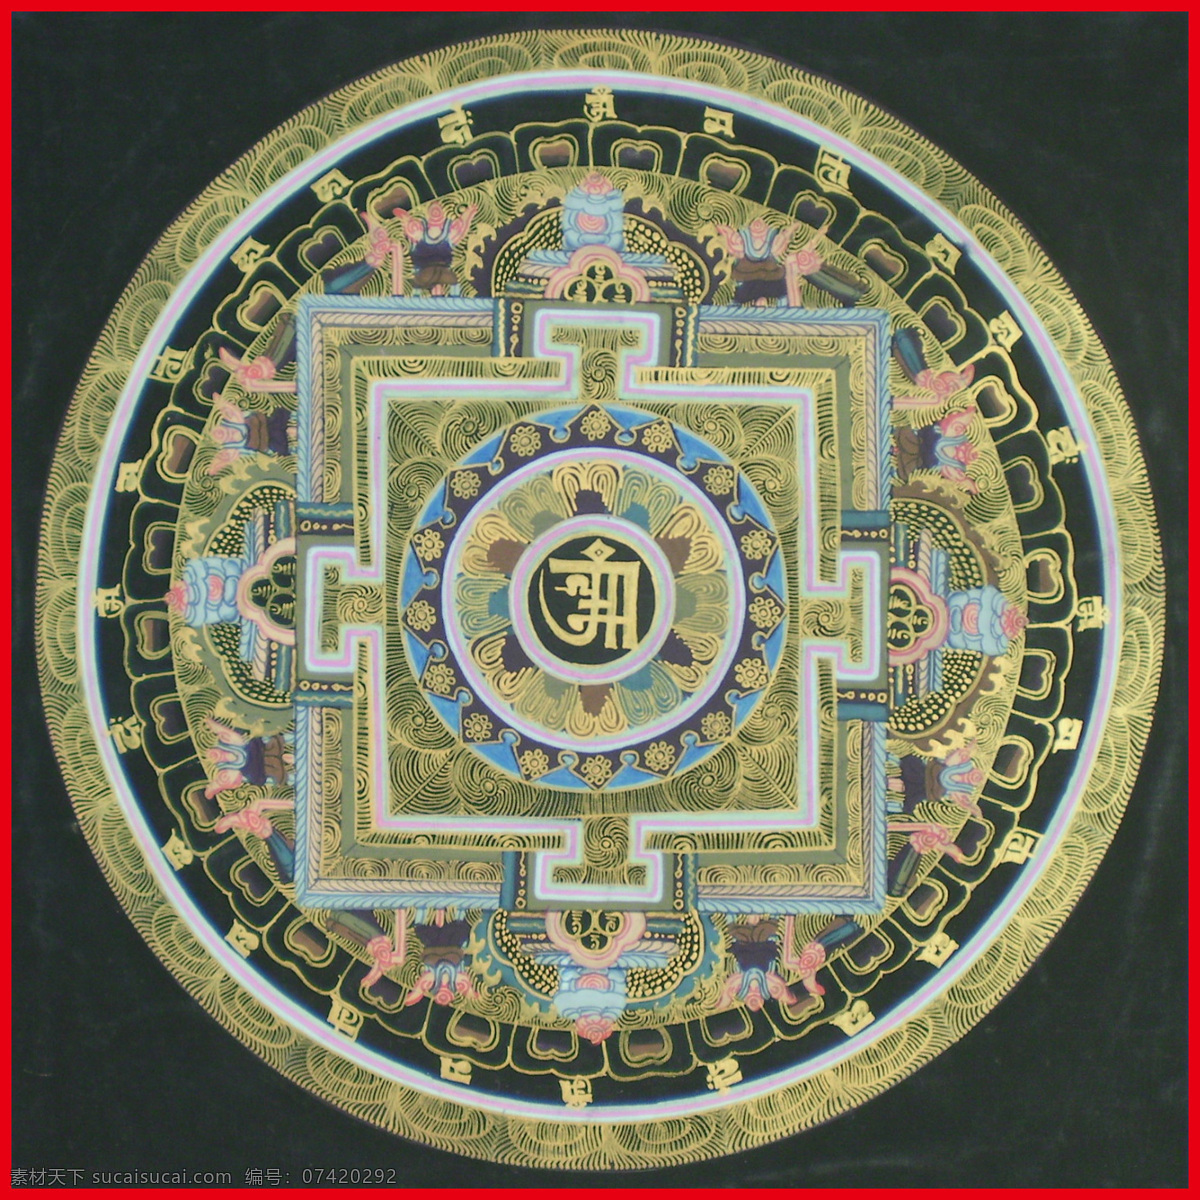 坛 城 佛 佛教 金刚 文化艺术 西藏 宗教信仰 坛城 护法 密宗